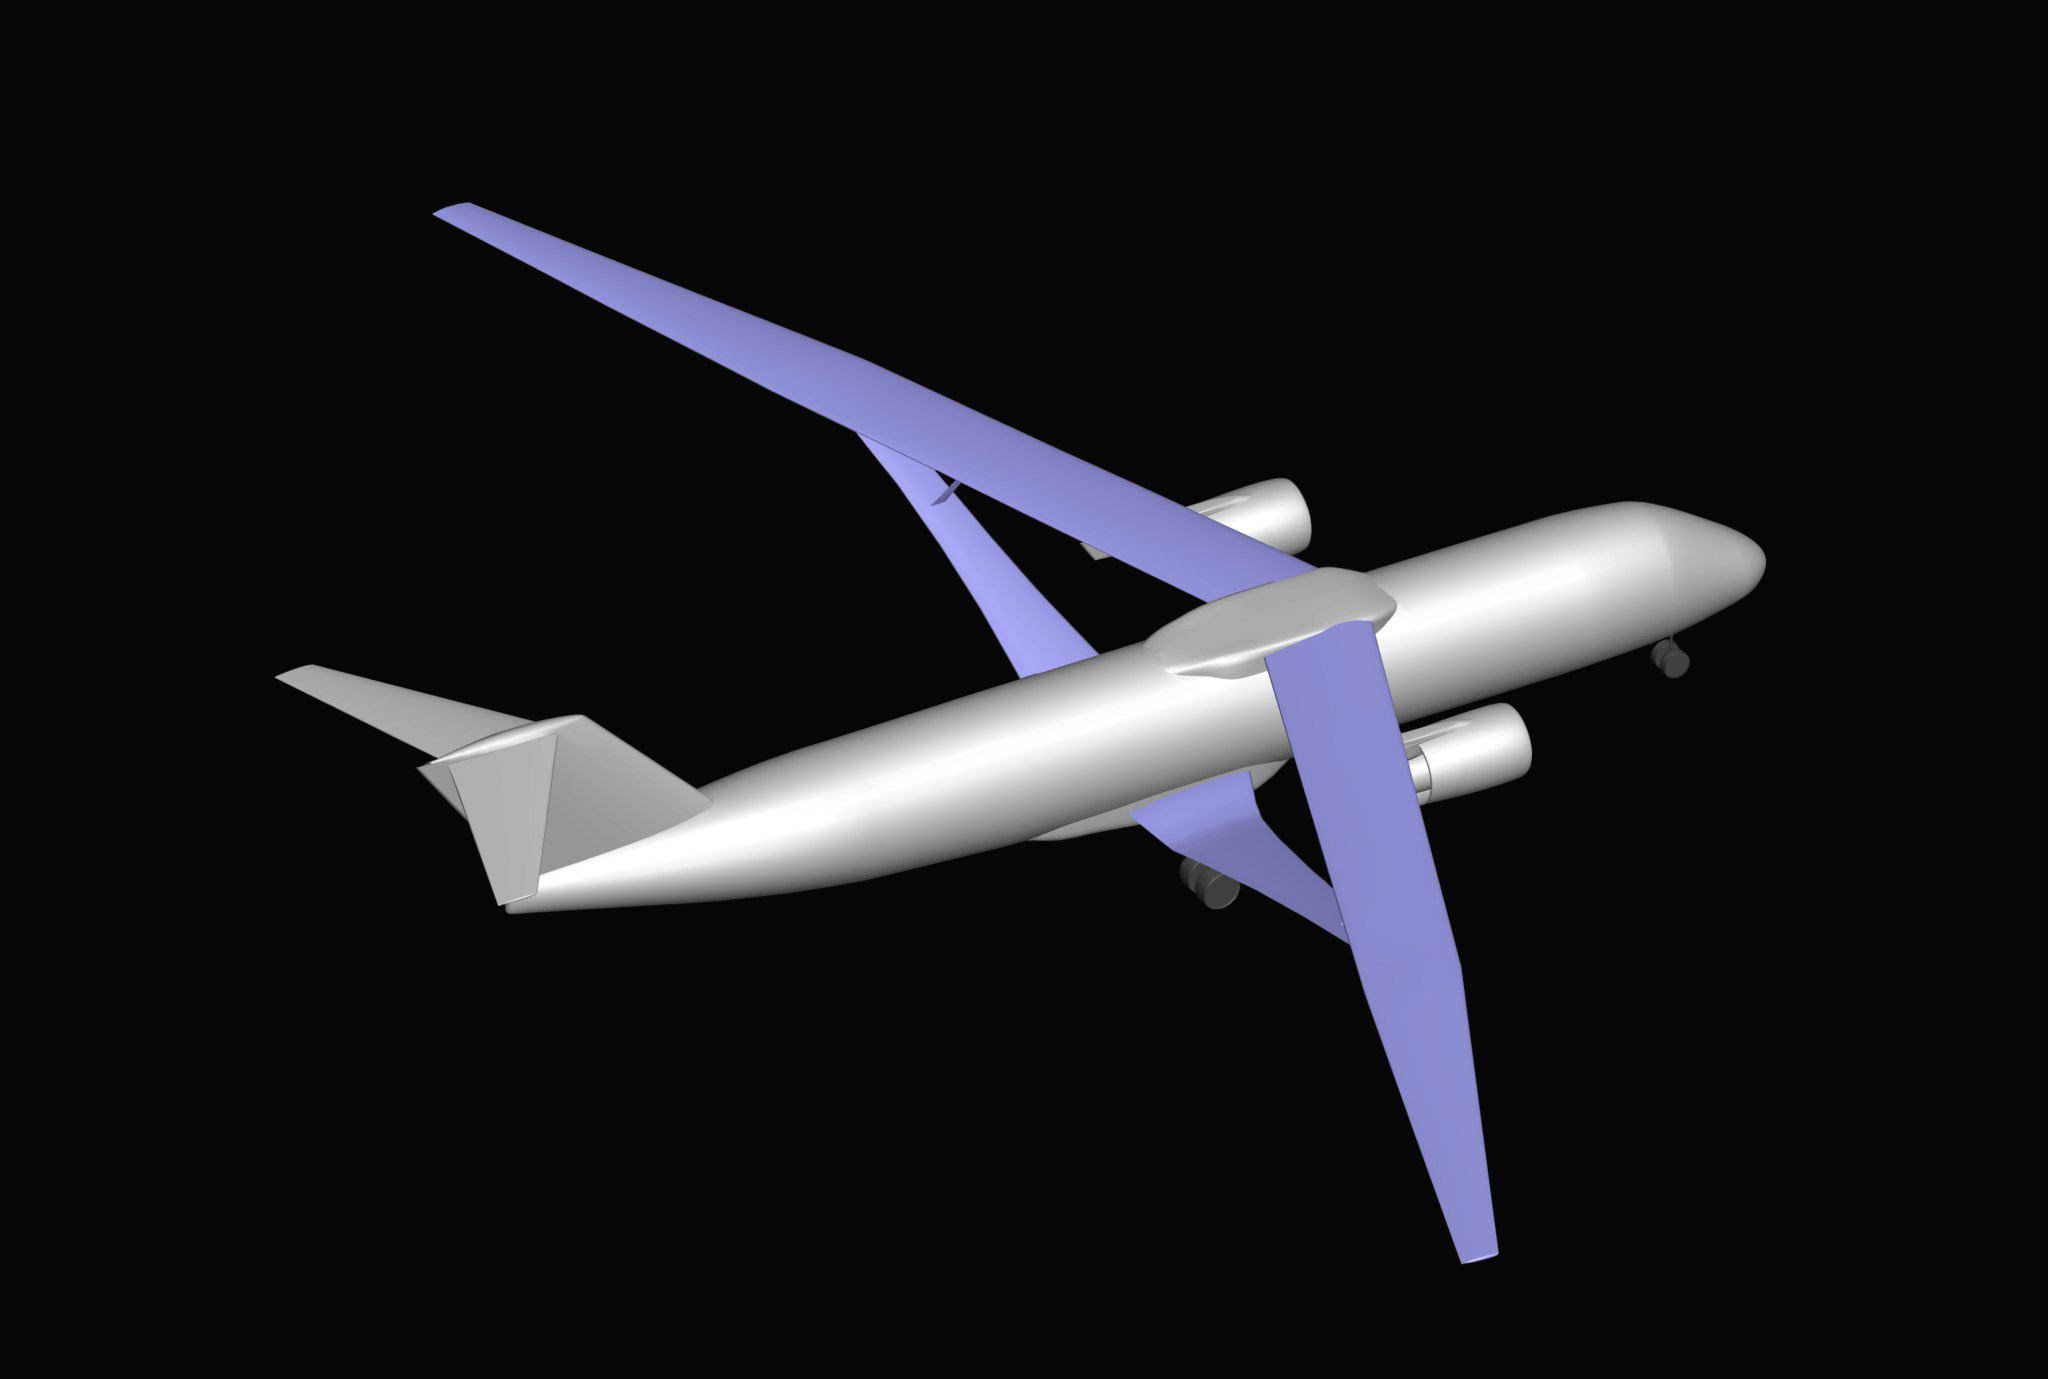 计算机生成的图像的俯视图显示，一架飞机有银色机身、T形尾翼和双喷气发动机，紫色机翼比今天的典型客机更长、更薄。